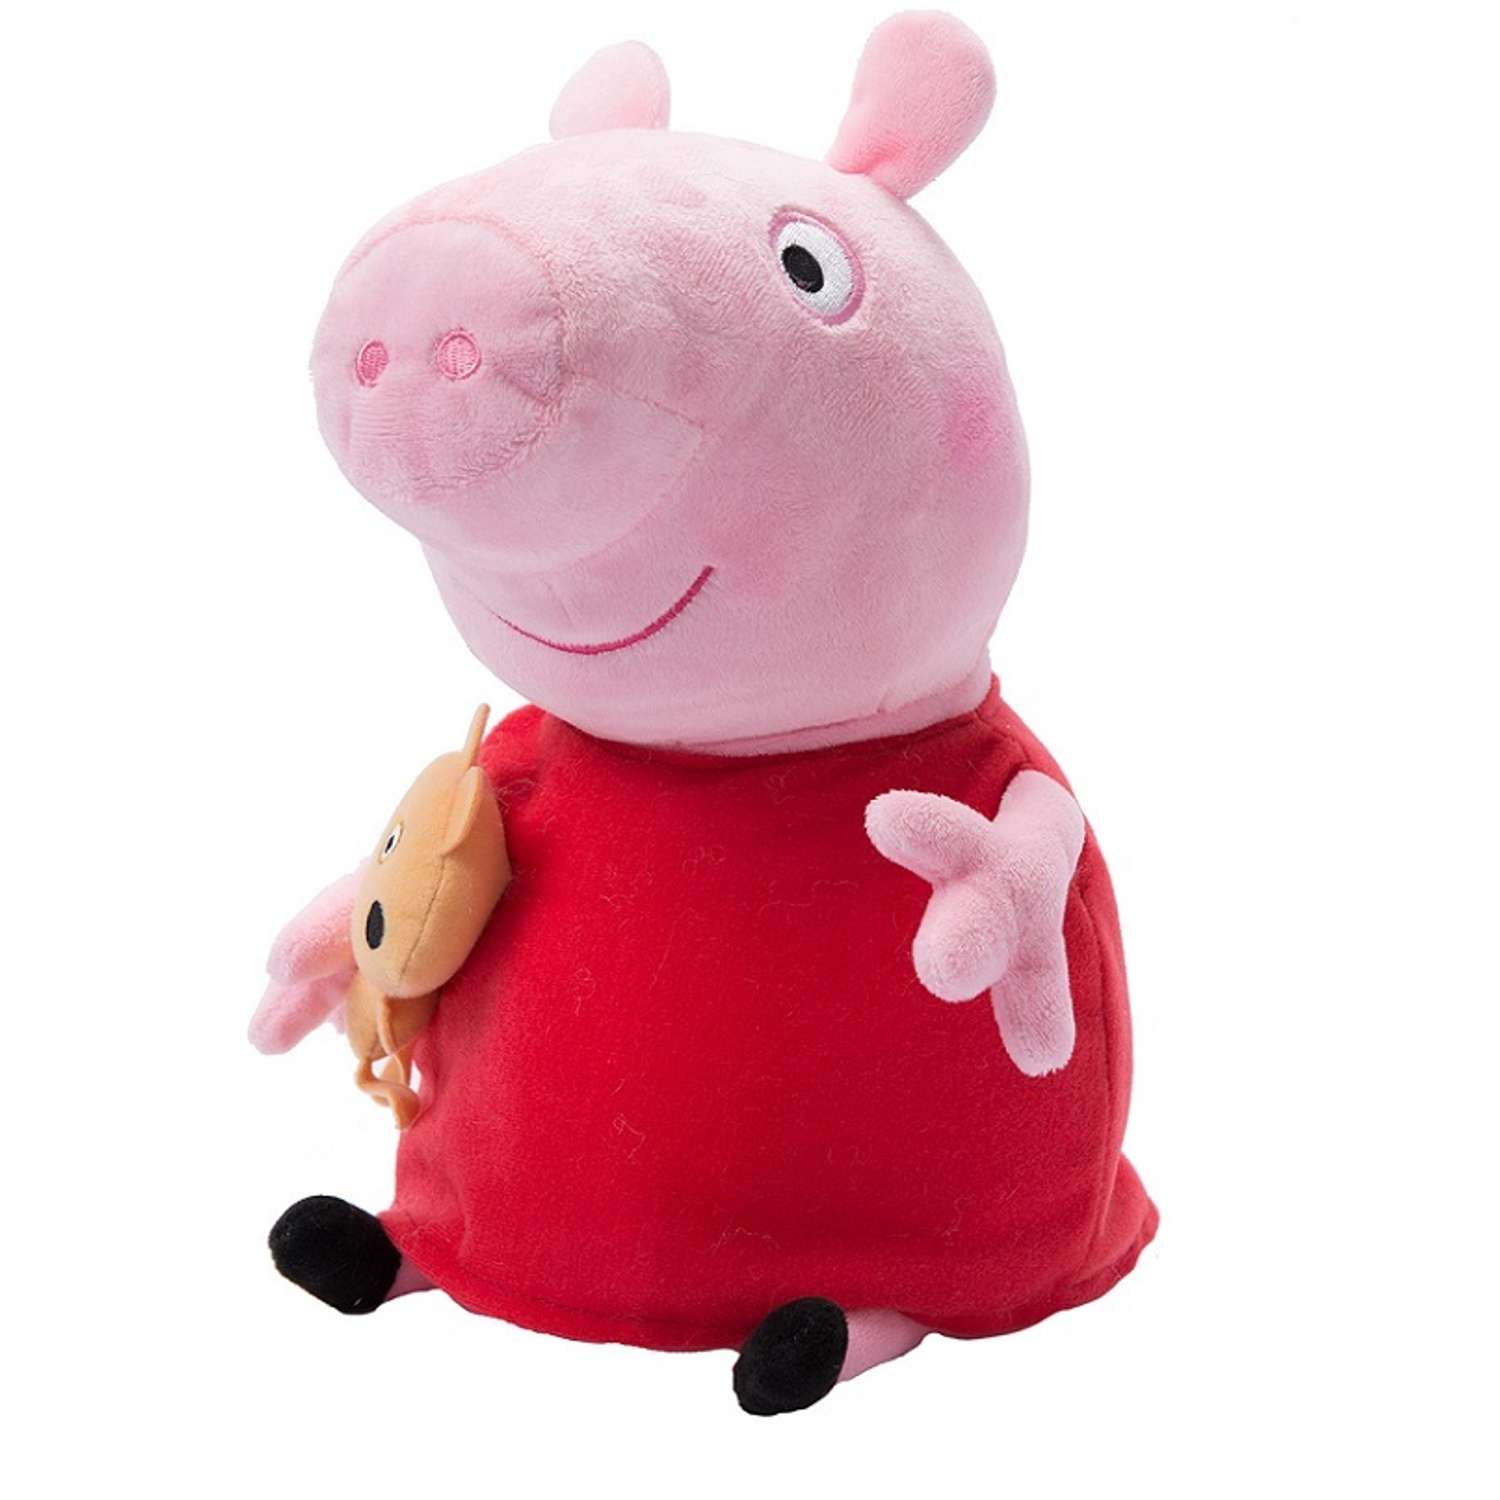 Игрушки пепы. Пеппа Пиг игрушки. Плюшевая игрушка Piggy Свинка Пеппа. Свинка Пеппа 40 см мягкая игрушка. Свинка Пеппа Свинка Пеппа игрушечная.